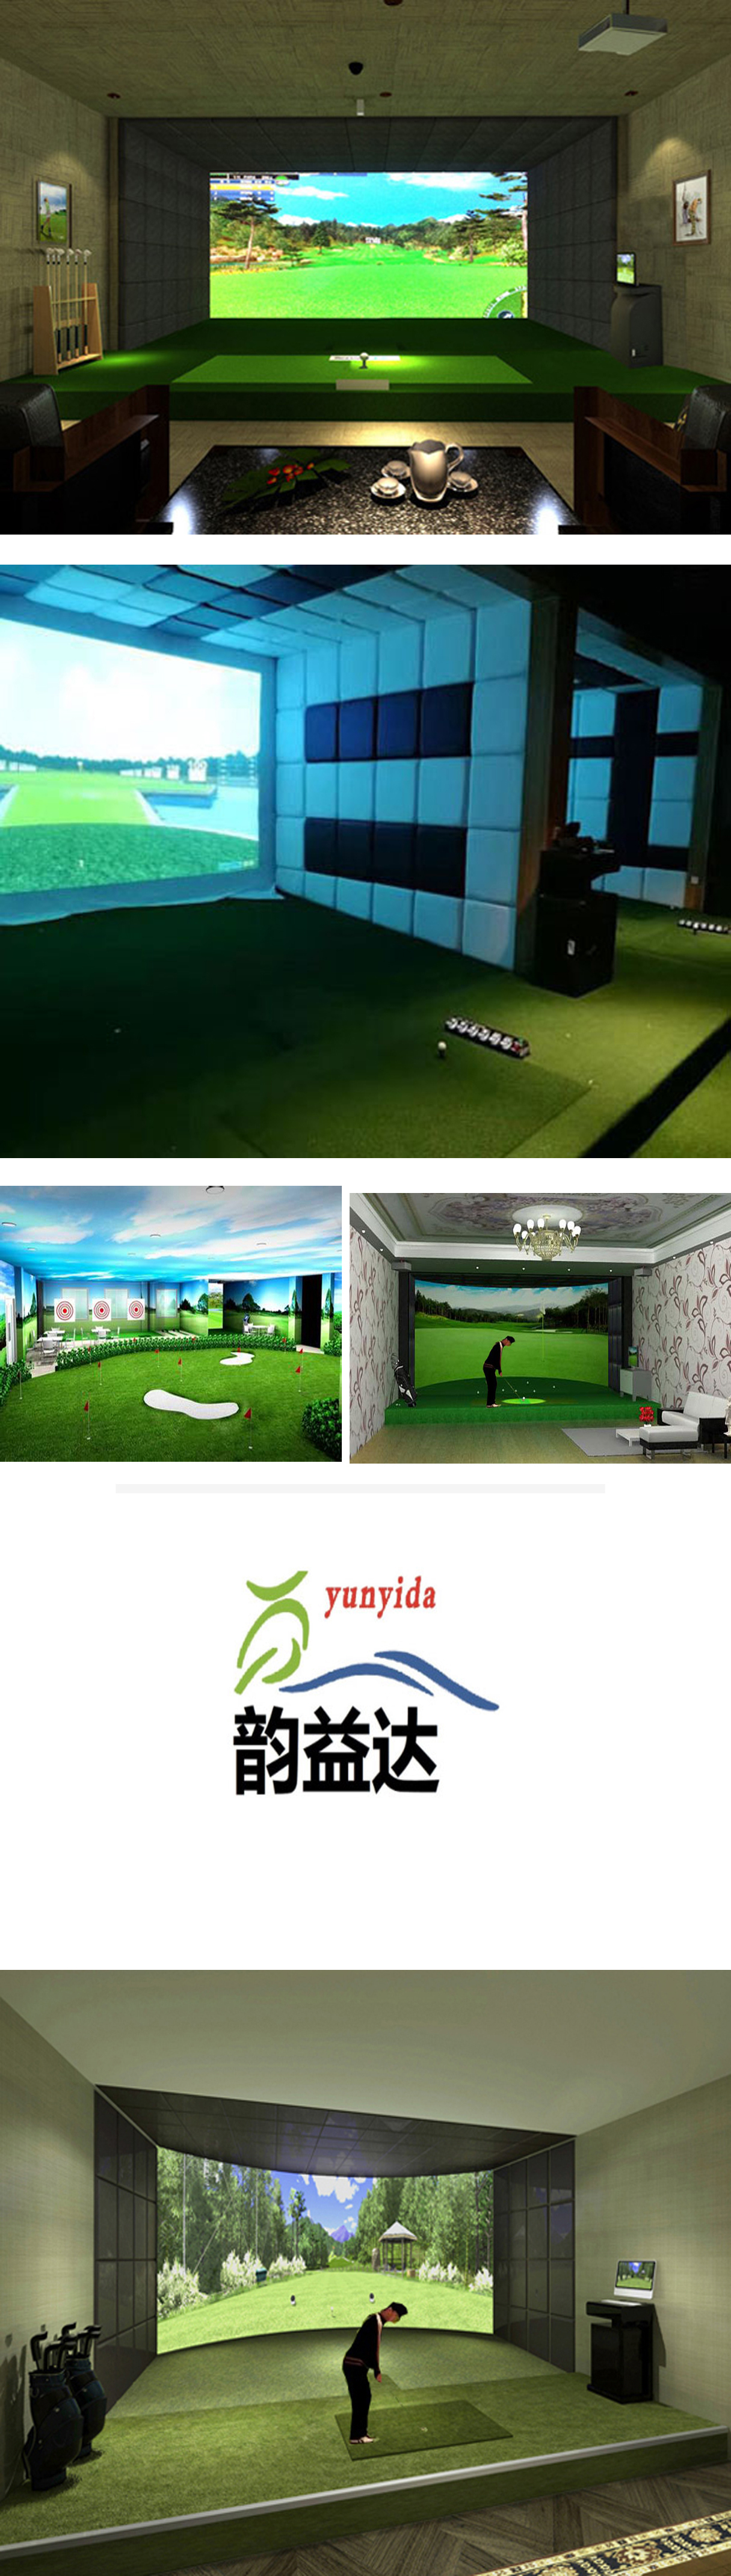 室内模拟高尔夫软件介绍 3.jpg